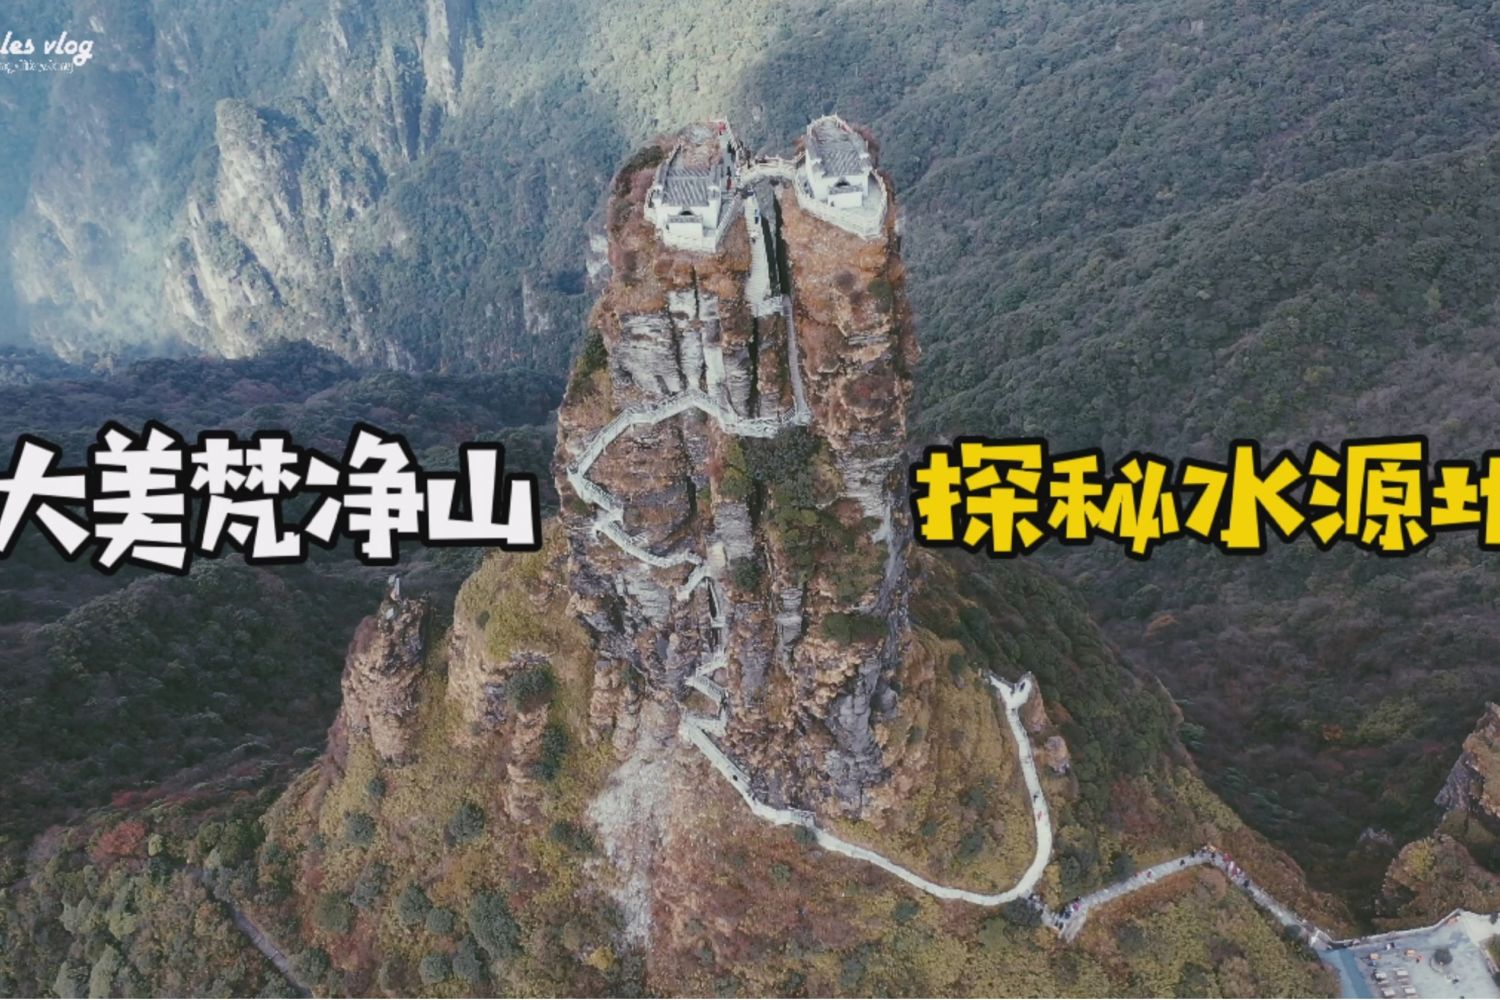 vlog：走进大美贵州梵净山，探寻隐秘水源地